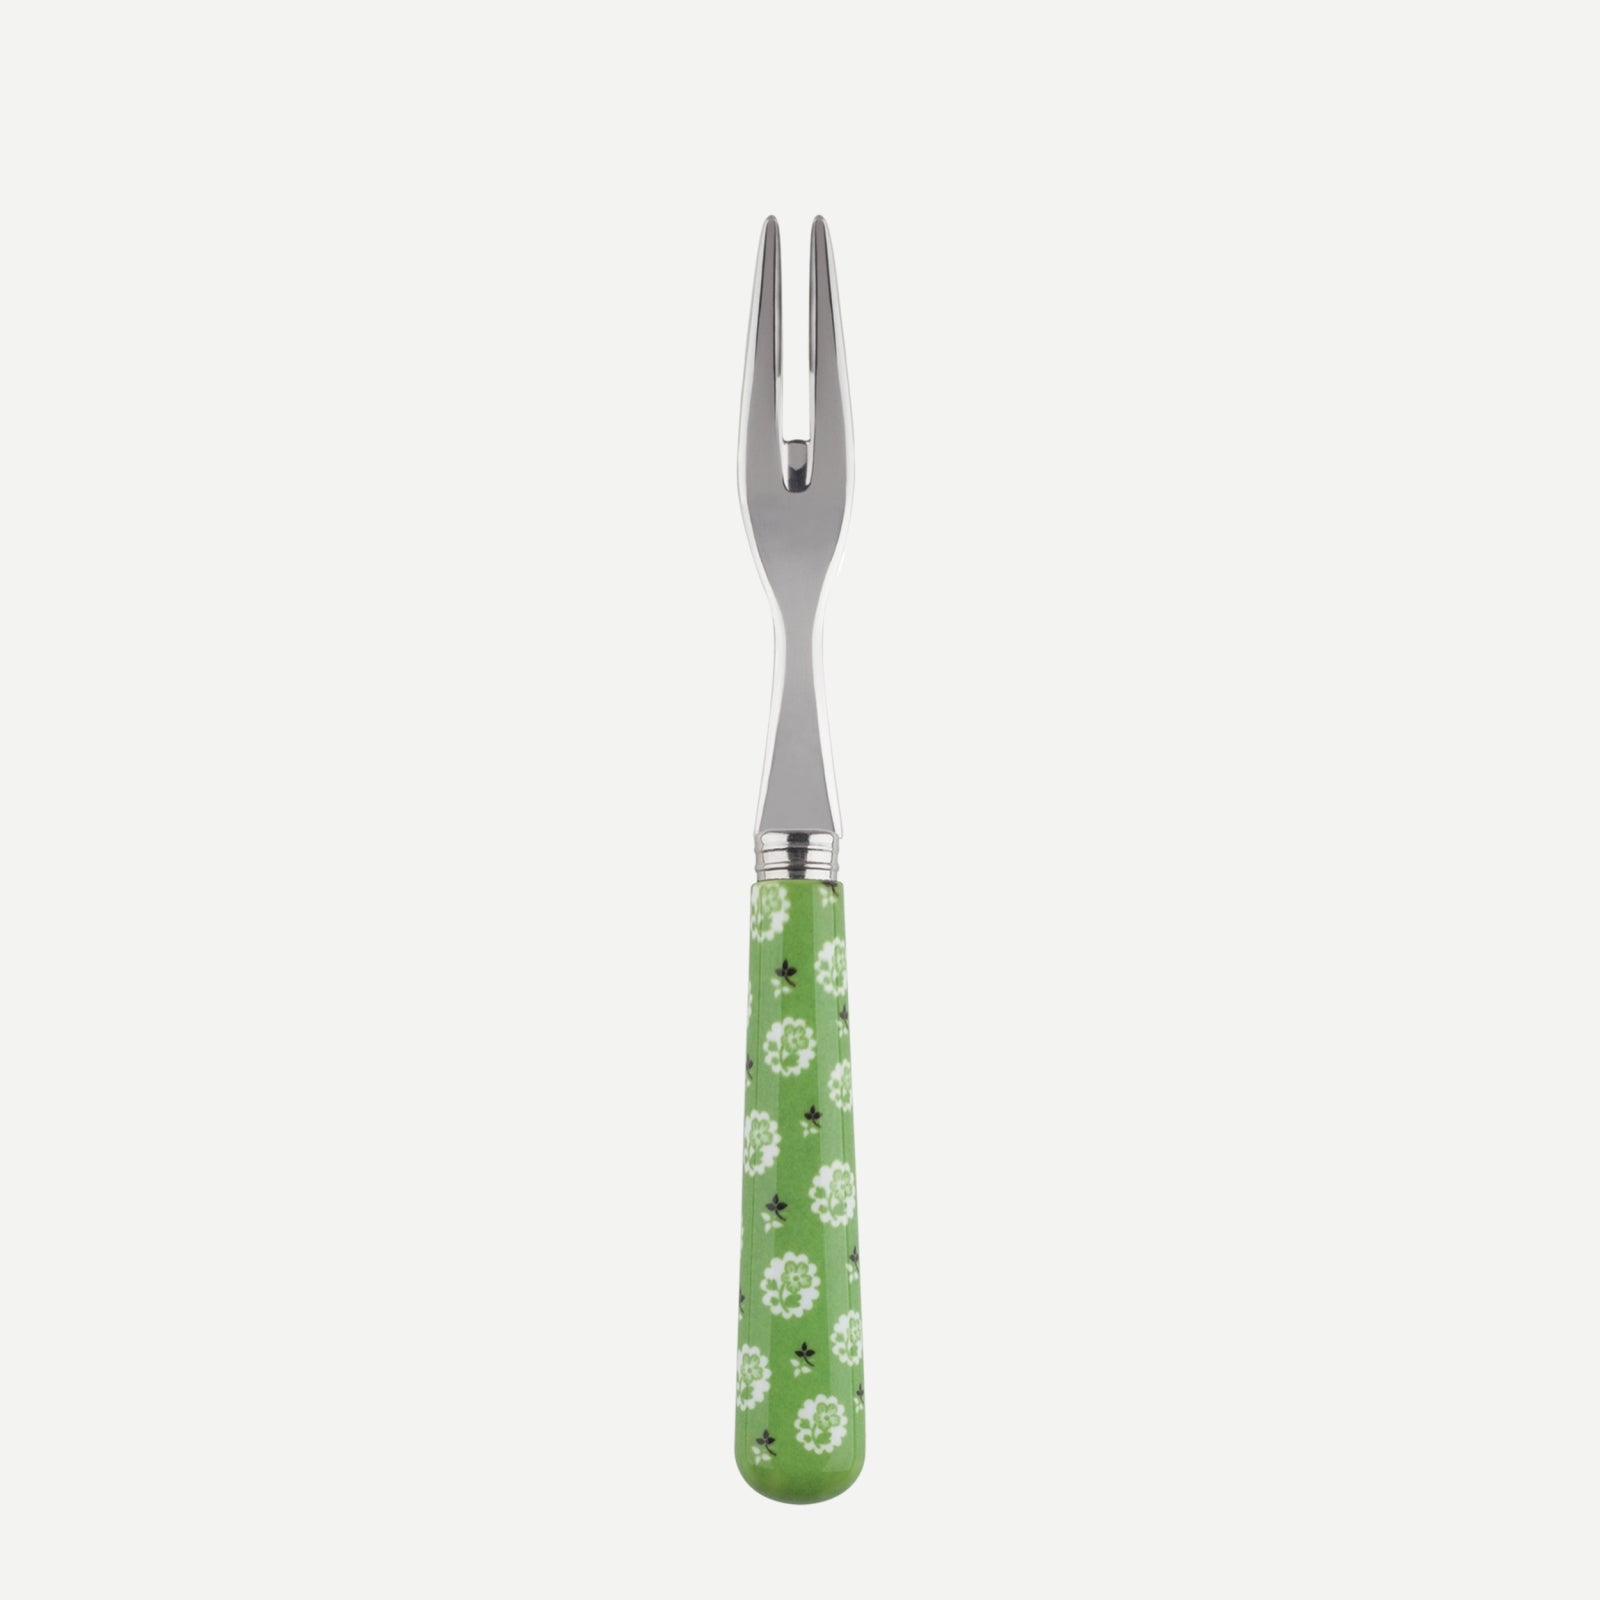 Cocktail fork - Provencal - Garden green